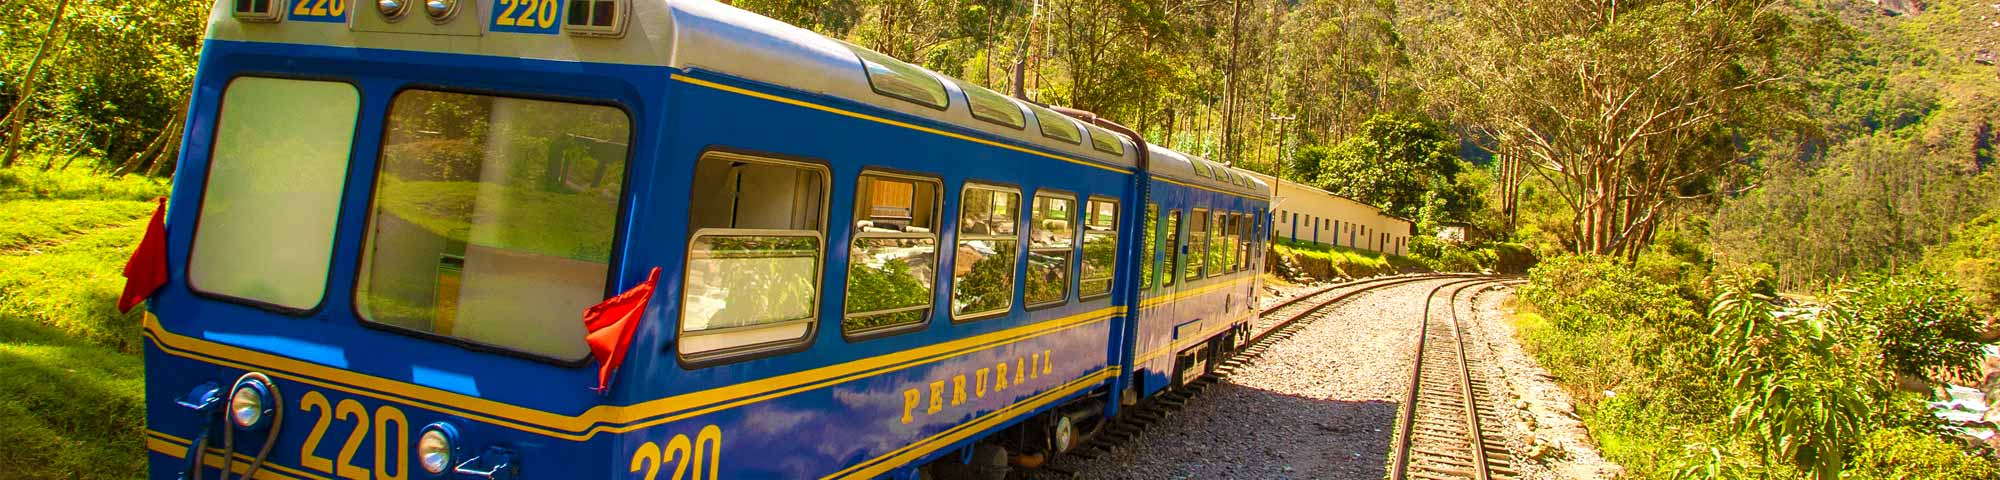 Ferrocarril Trasandino: Rutas a Machupicchu y Puno suspendidas el 23 y 24 de noviembre 